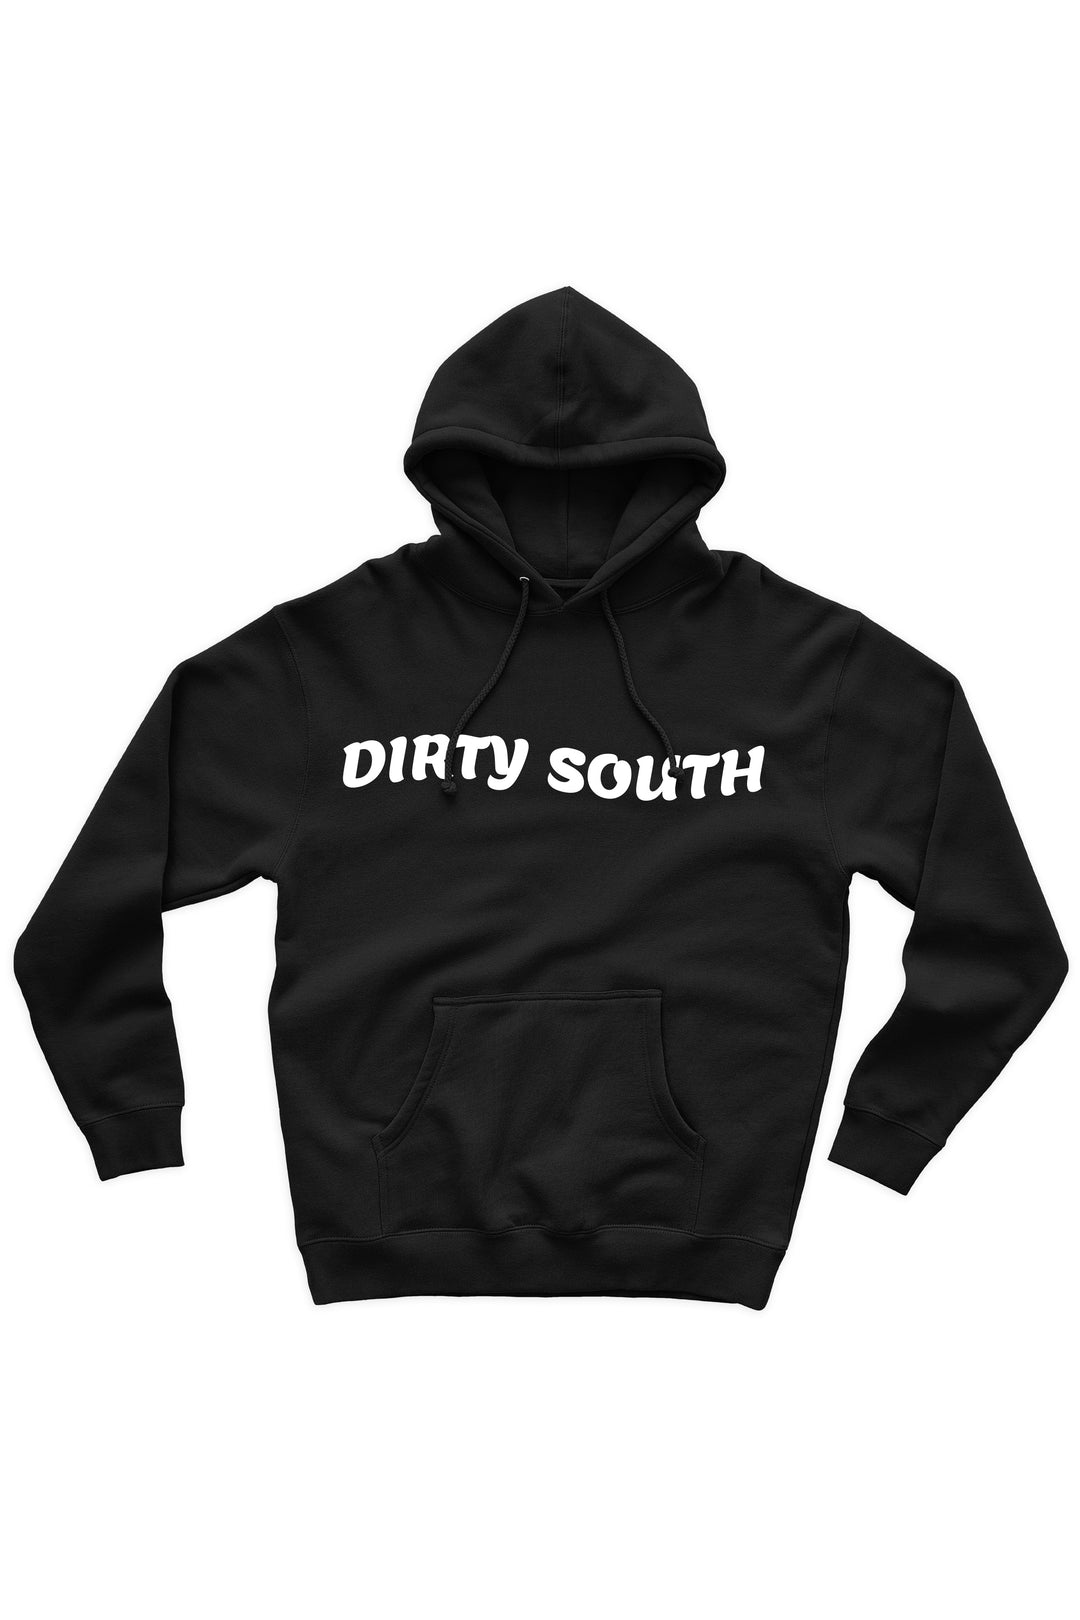 Dirty South Hoodie (White Logo) - Zamage